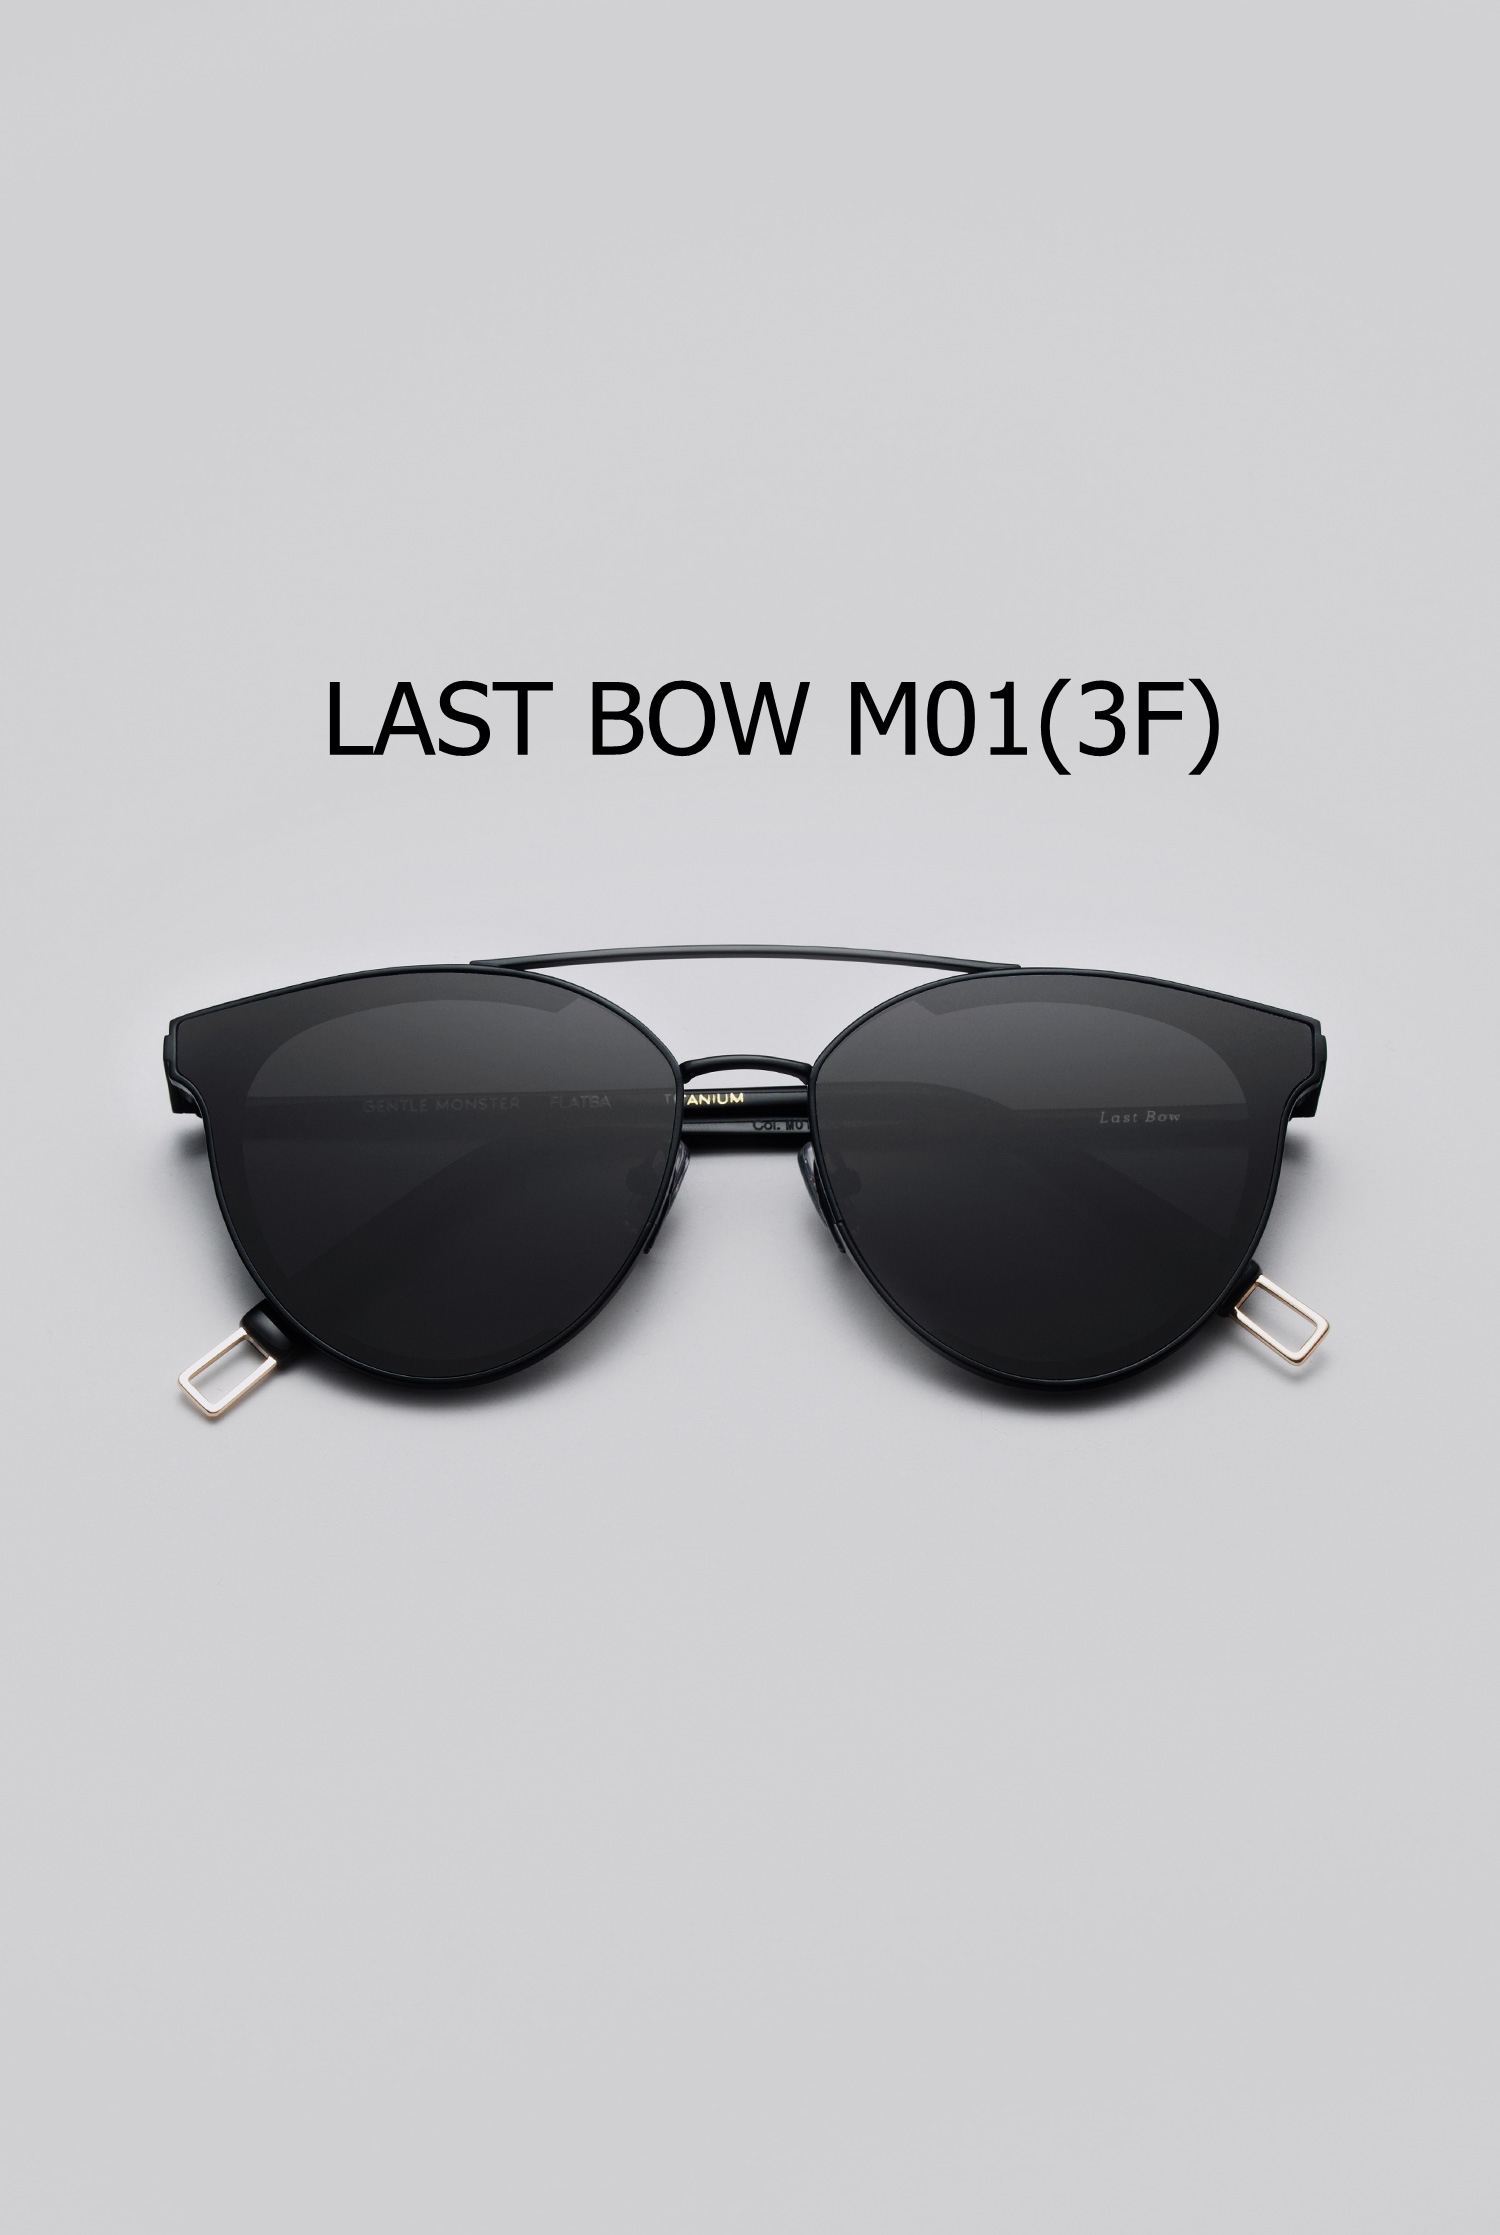 LAST BOW M01(3F)